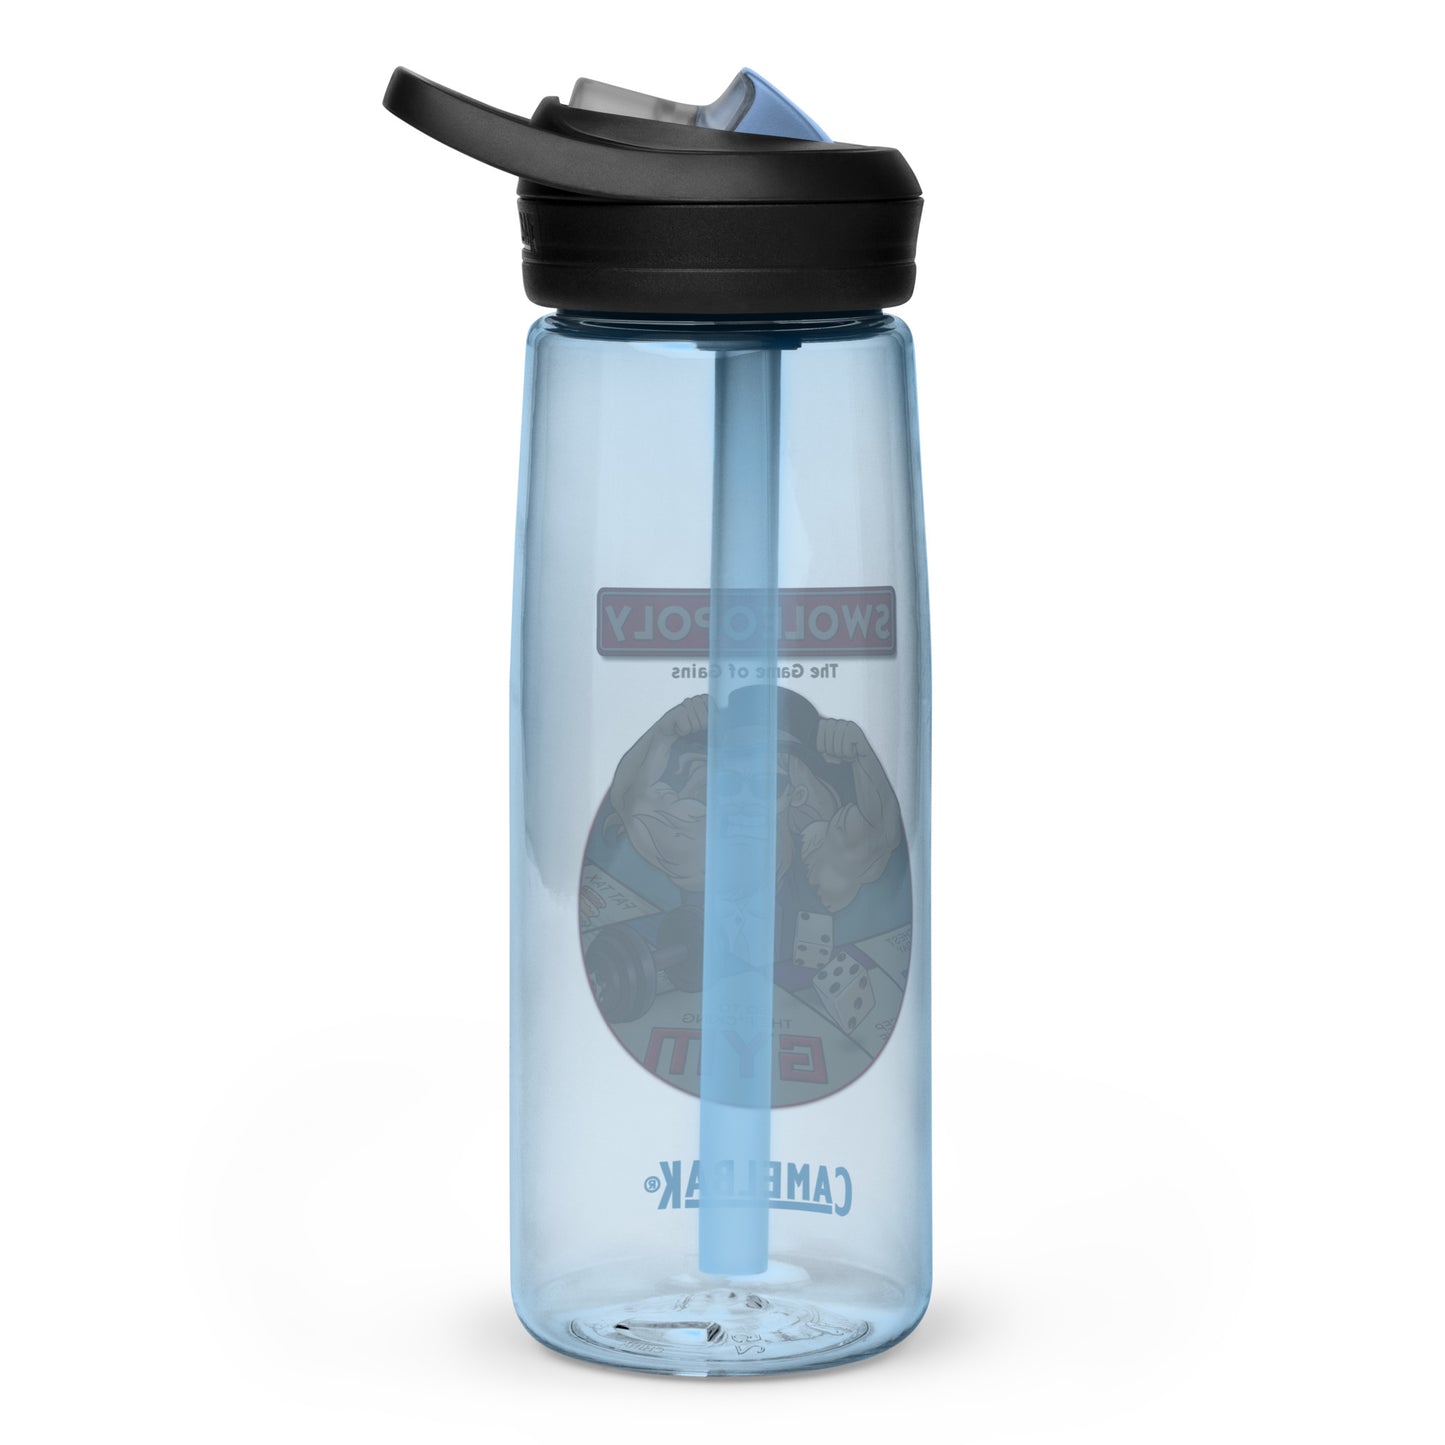 Swoleopoly Water Bottle